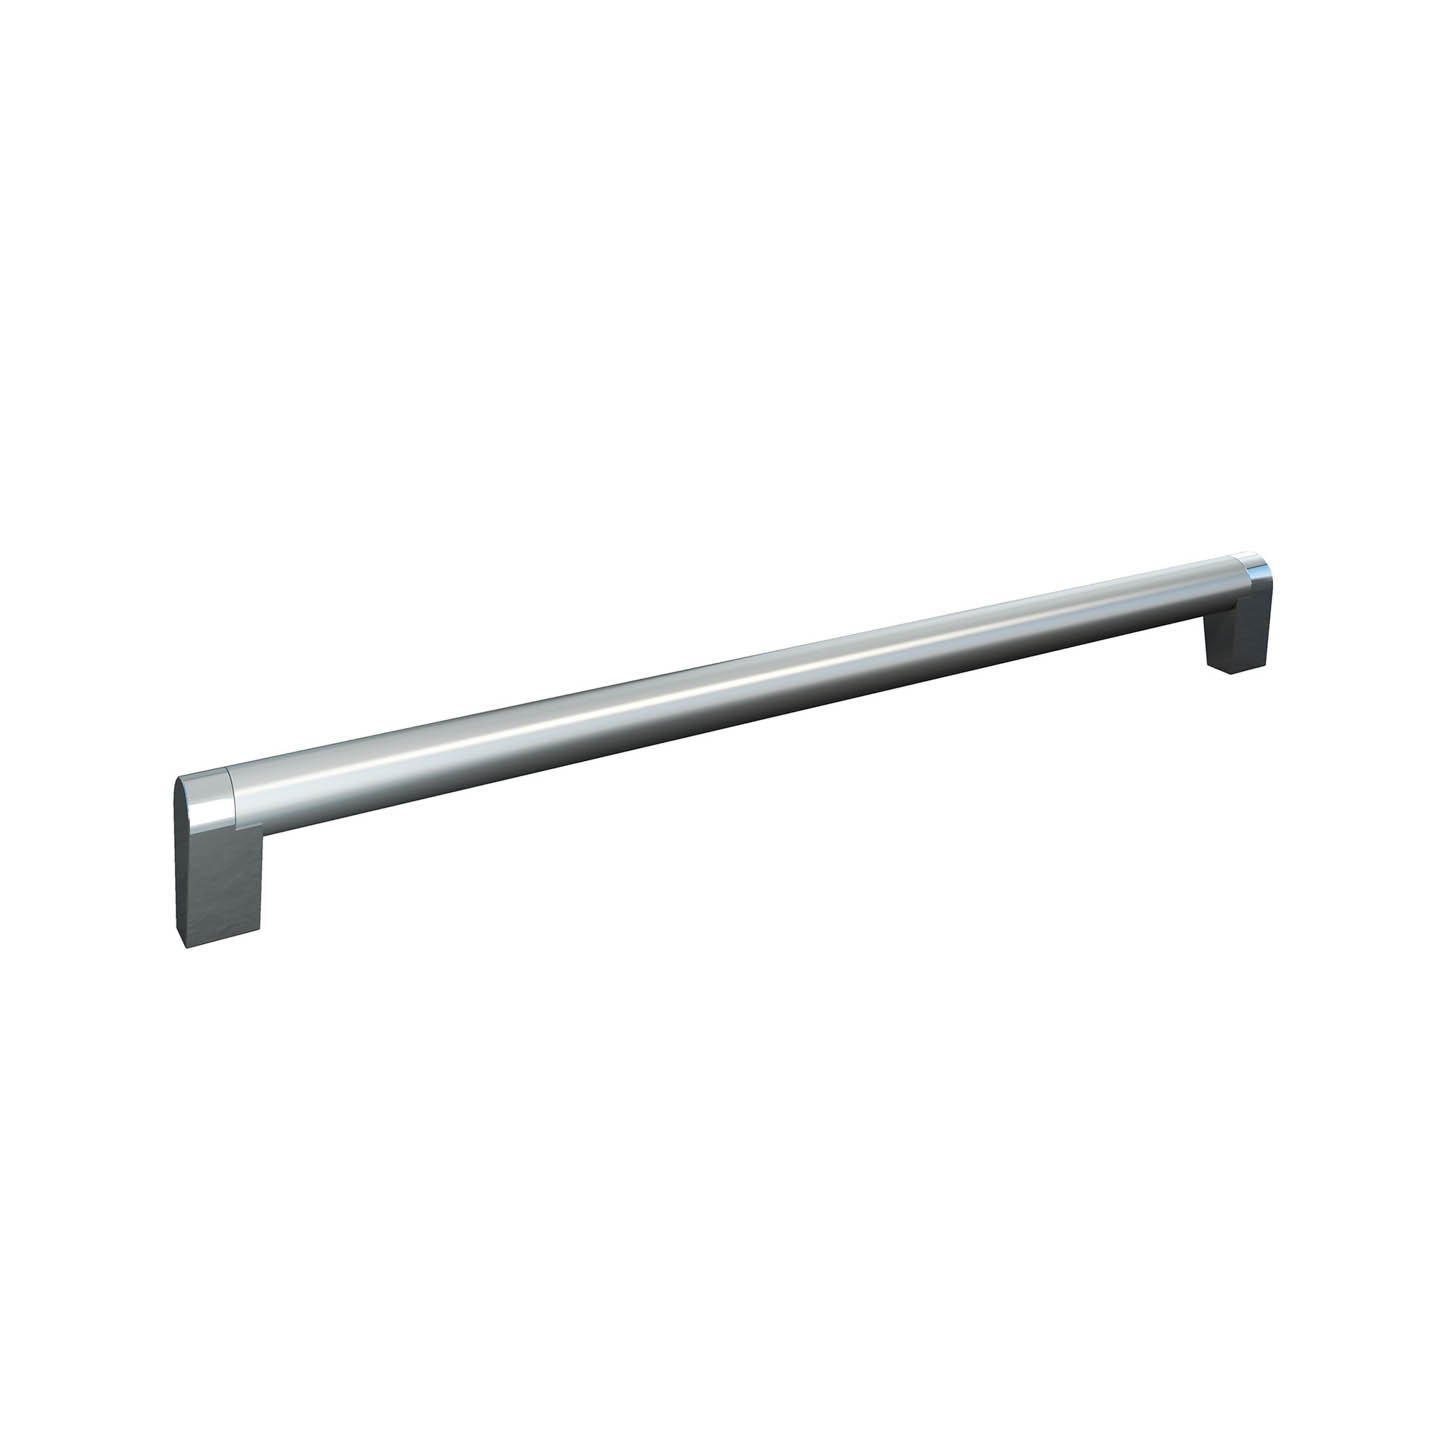 artego Küchen · Griff 135 Stainless Steel, Chrome